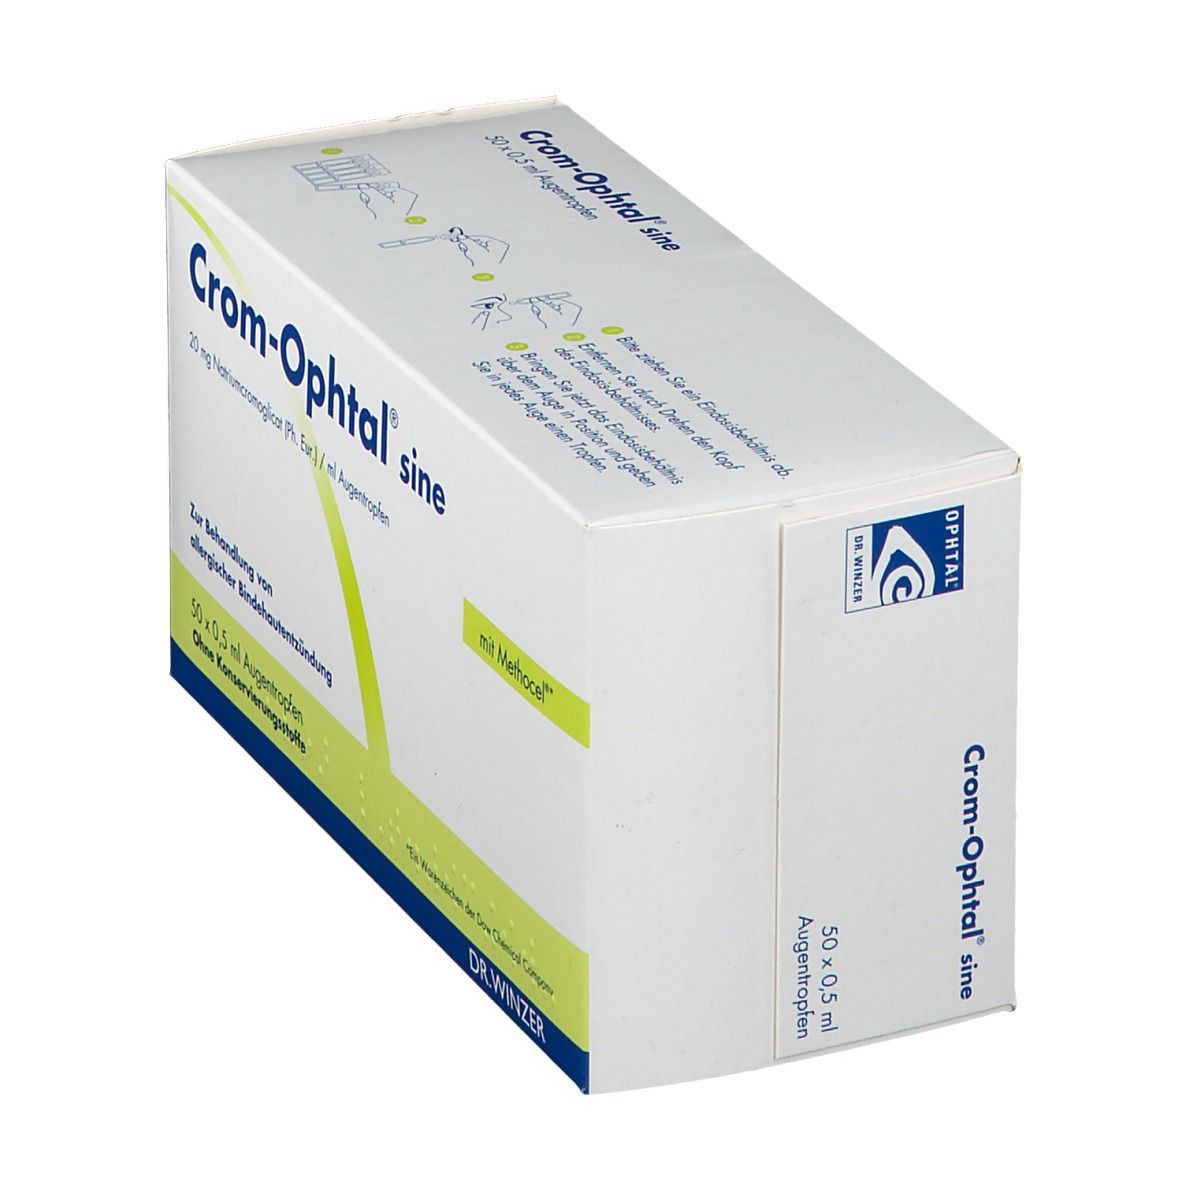 Crom-Ophtal® sine Einzeldosenbehältnisse